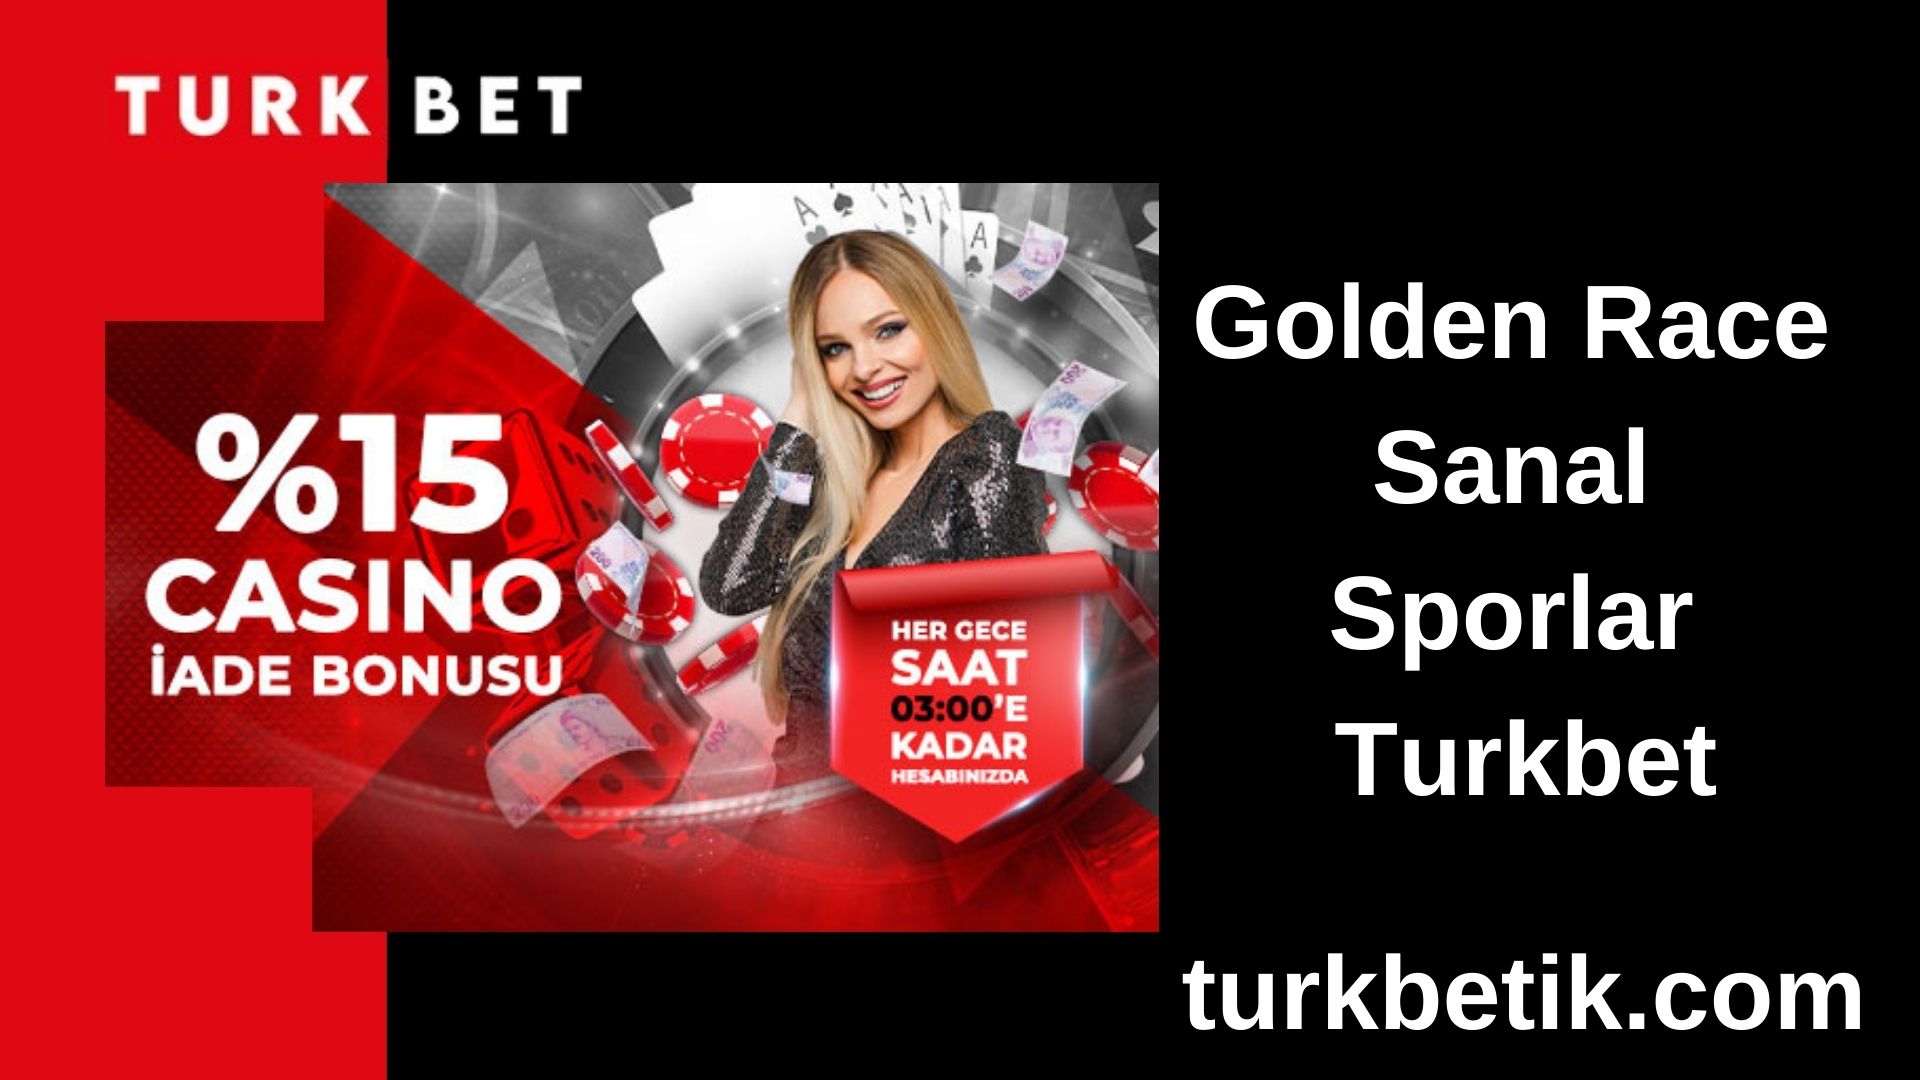 Golden Race Sanal Sporlar Turkbet